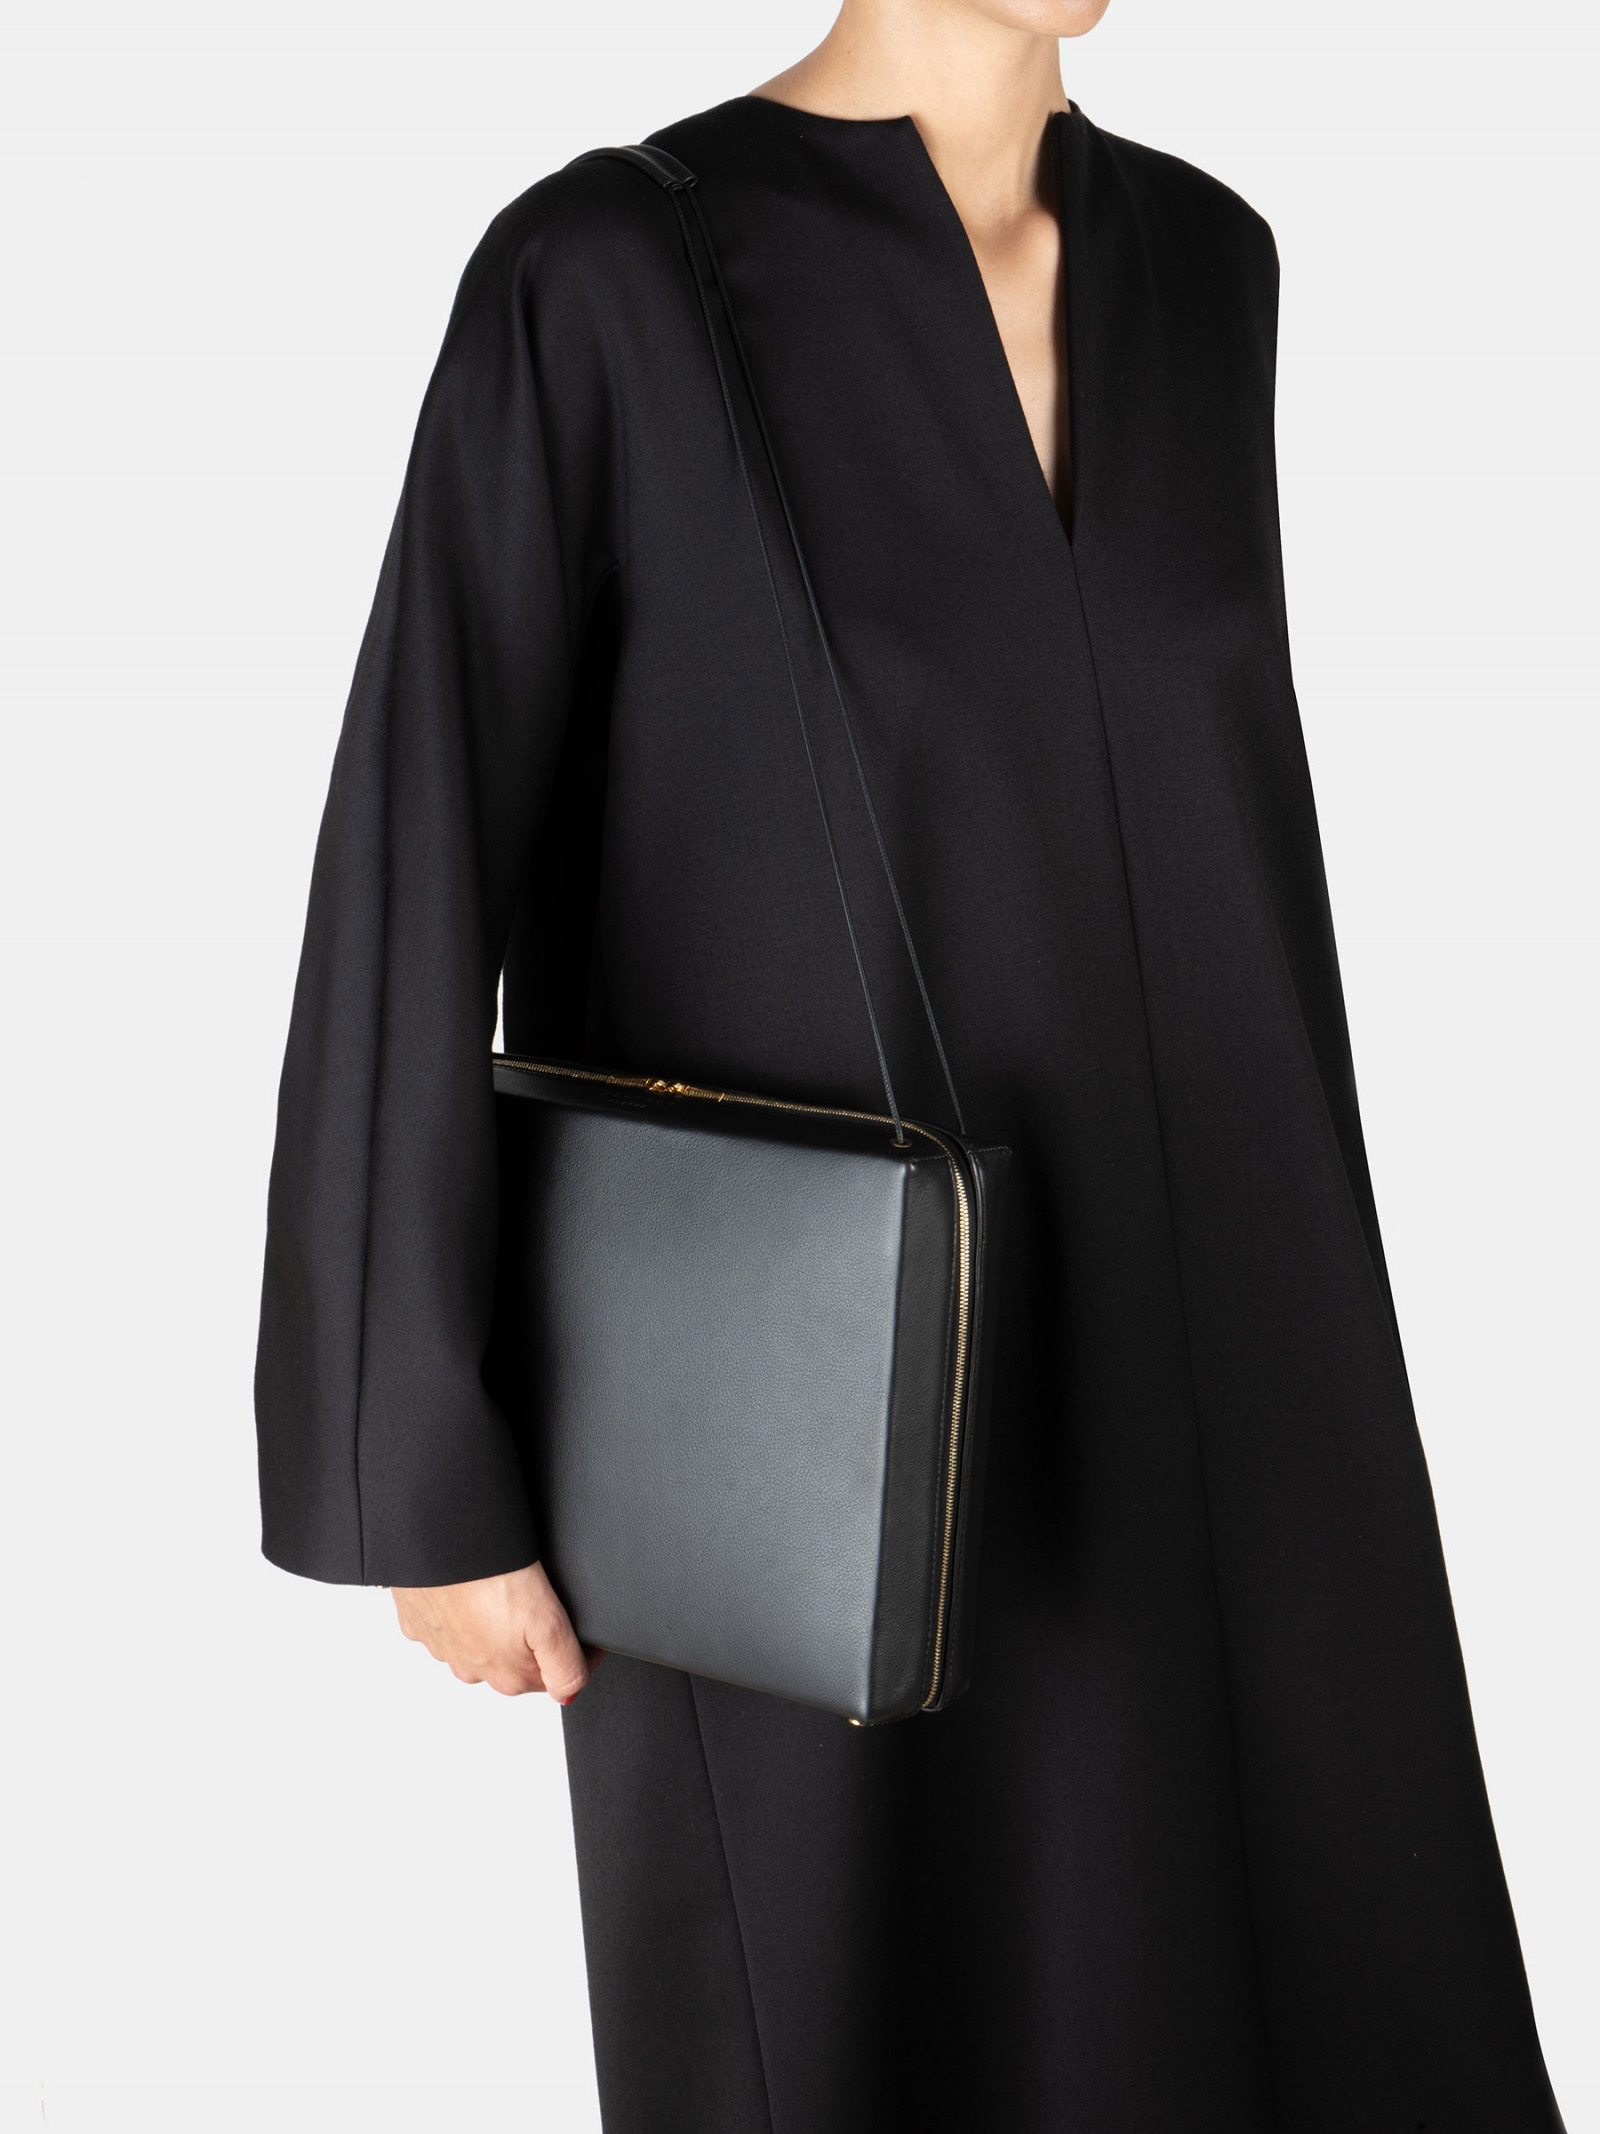 LINDEN 43 shoulder bag in black calfskin leather | TSATSAS